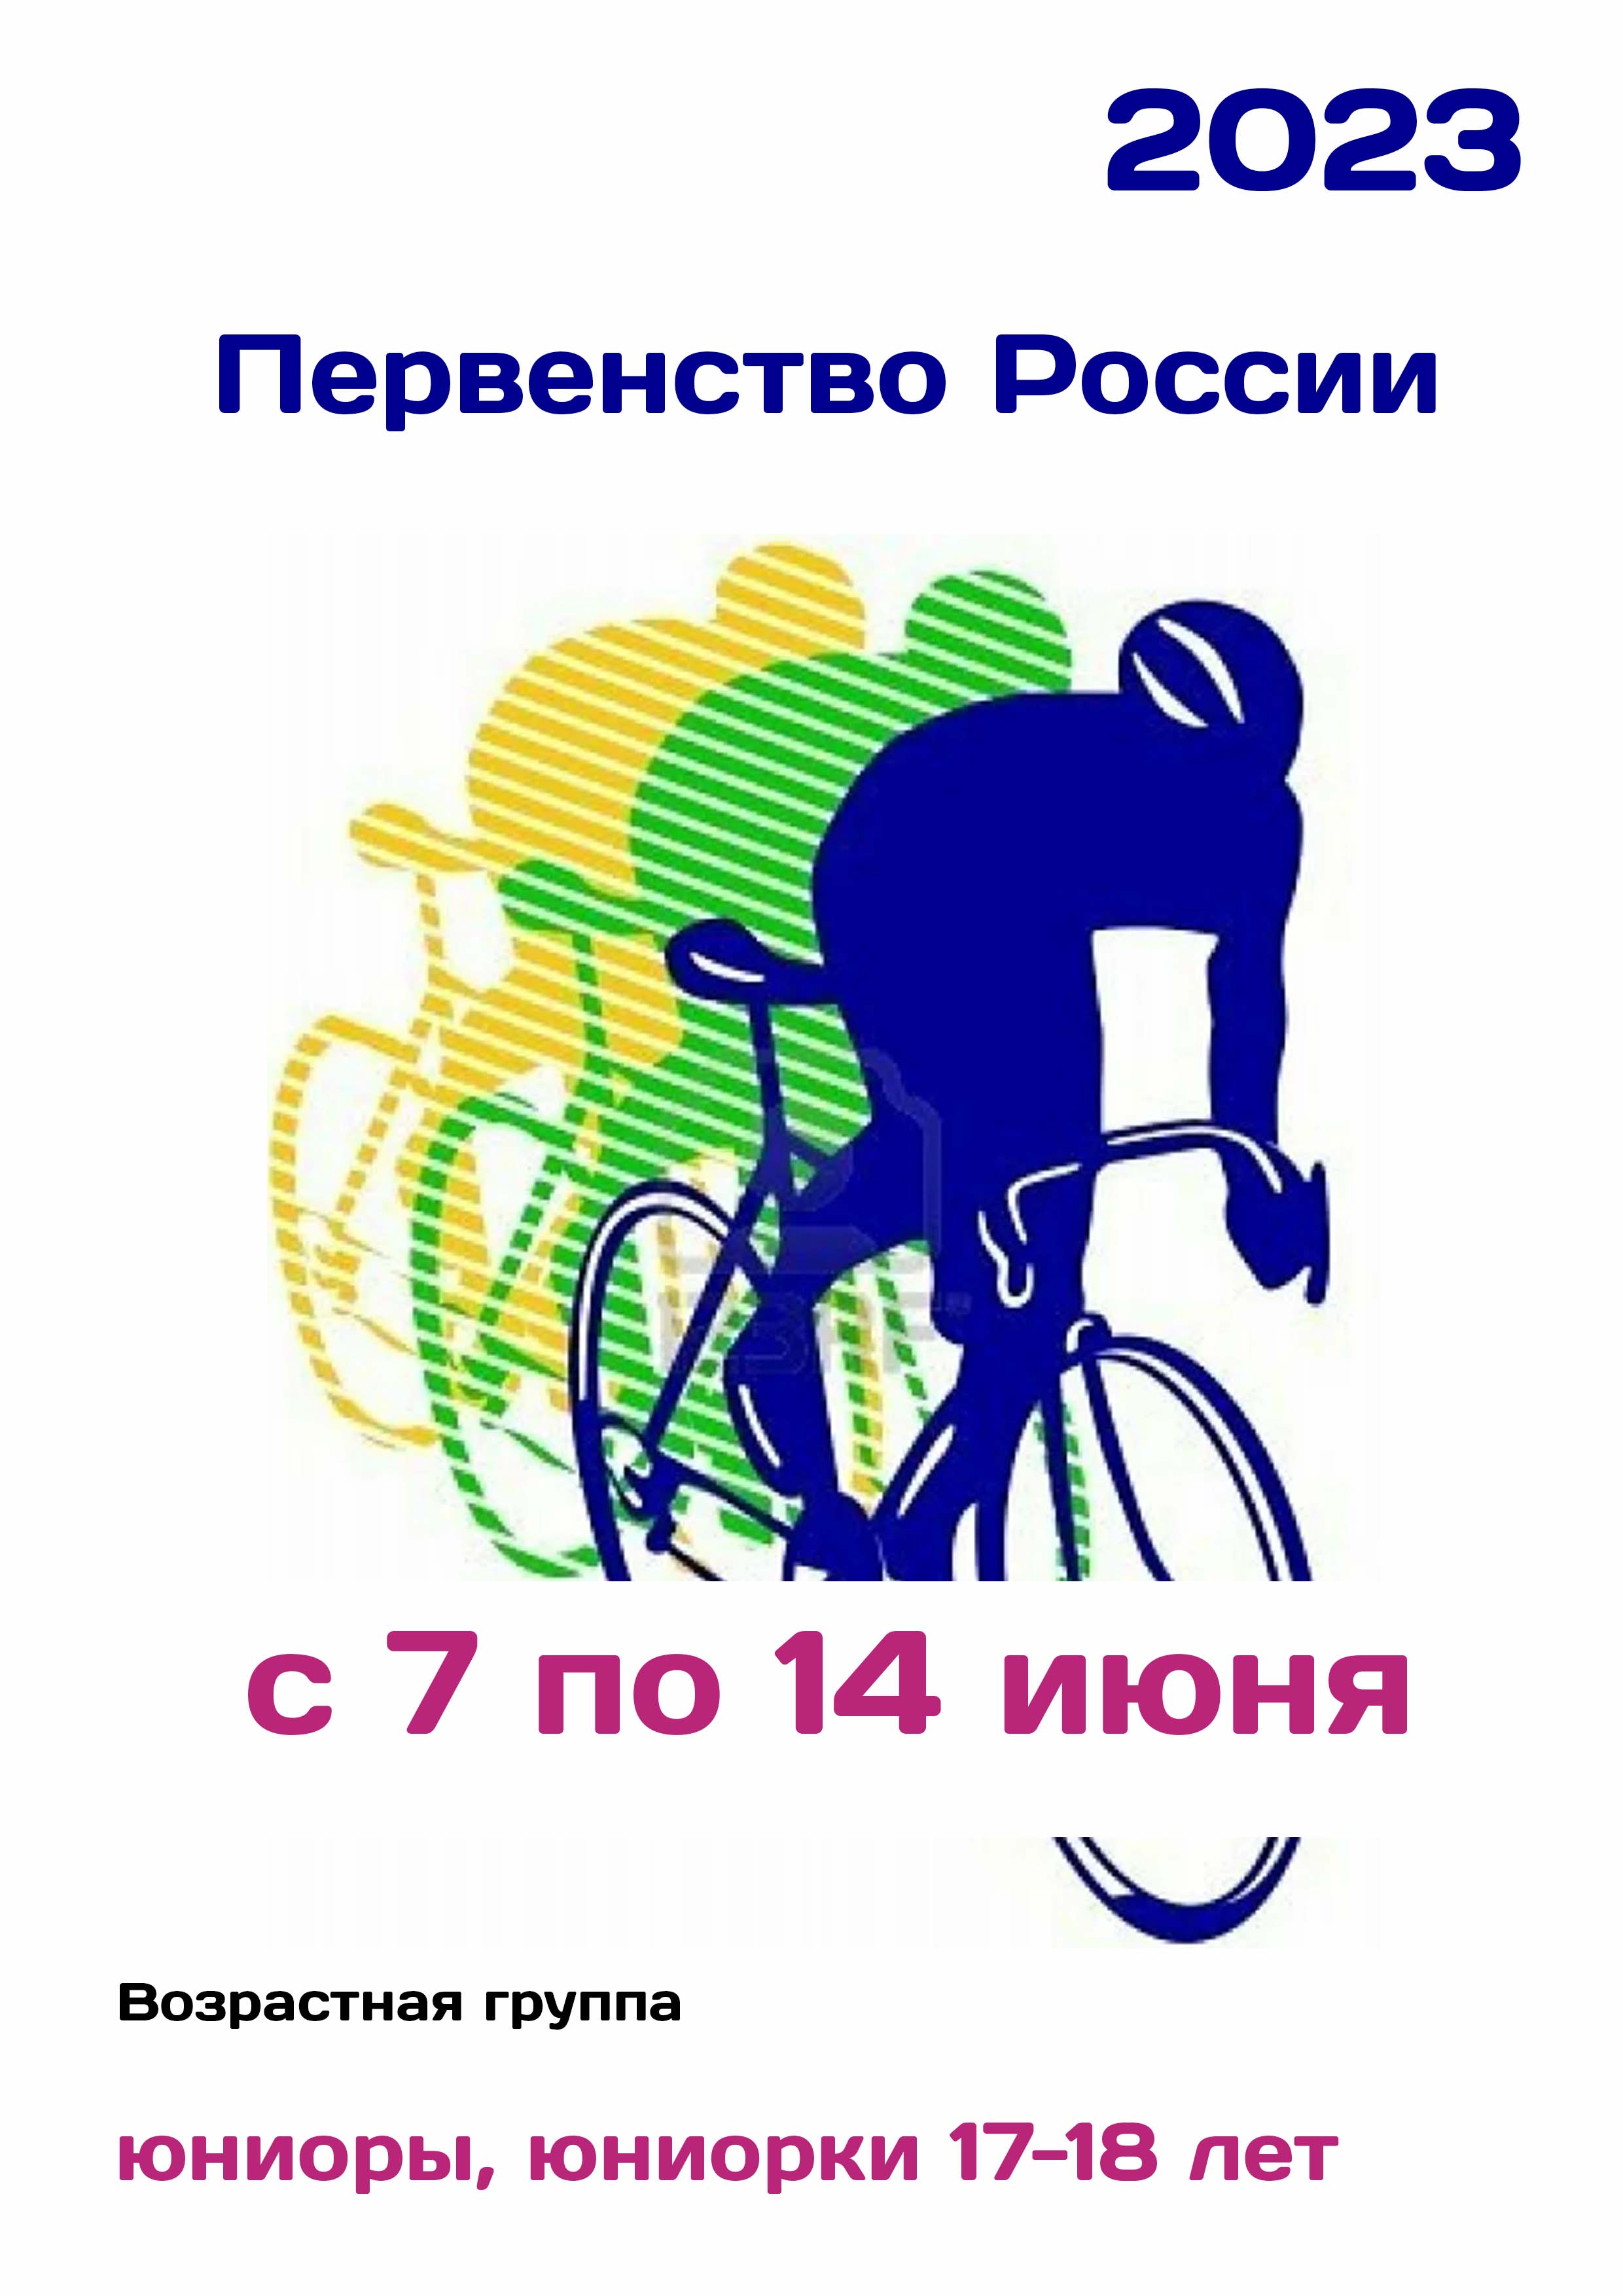 Первенство России по велоспорту 7  de junio de
 2023  año
 